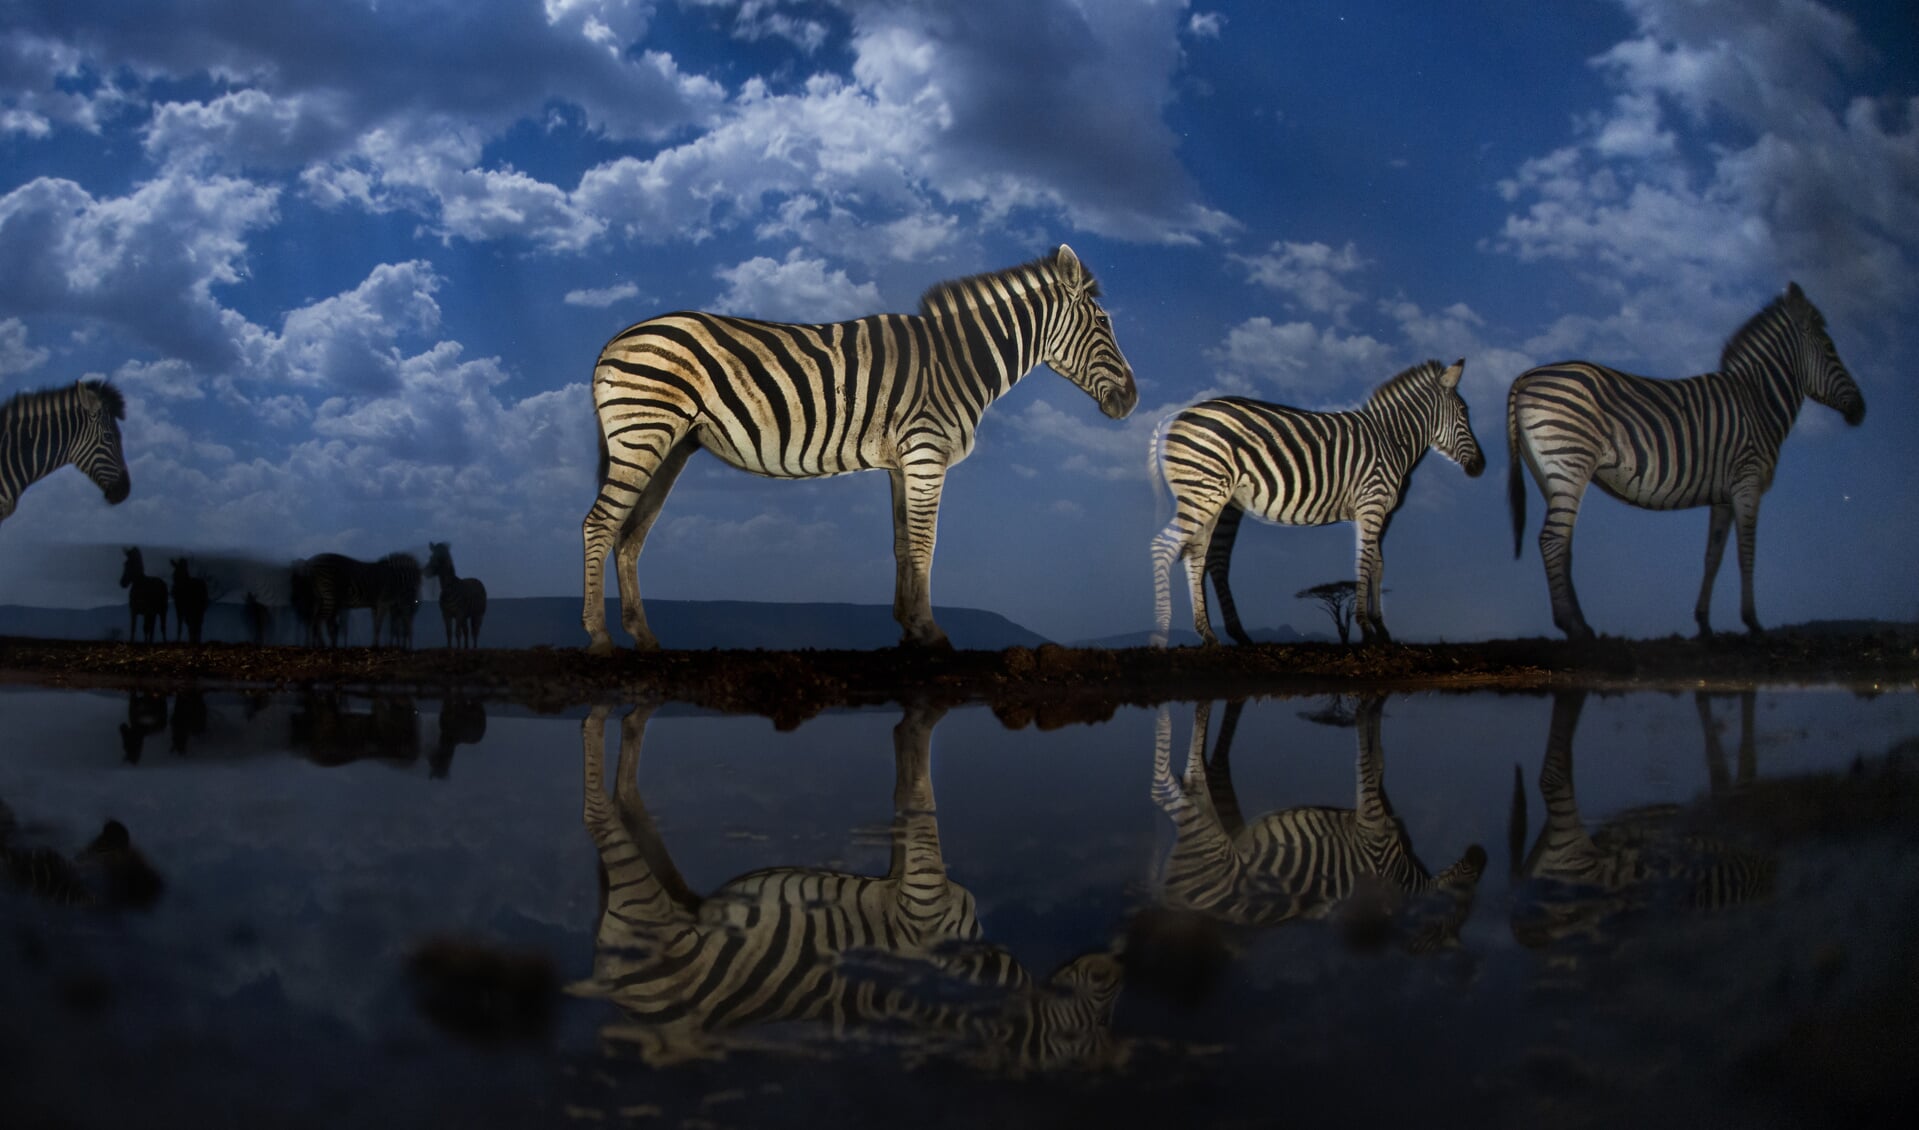 De Hongaarse fotograaf Bencé Maté is met deze foto van de zebra's in de prijzen gevallen.